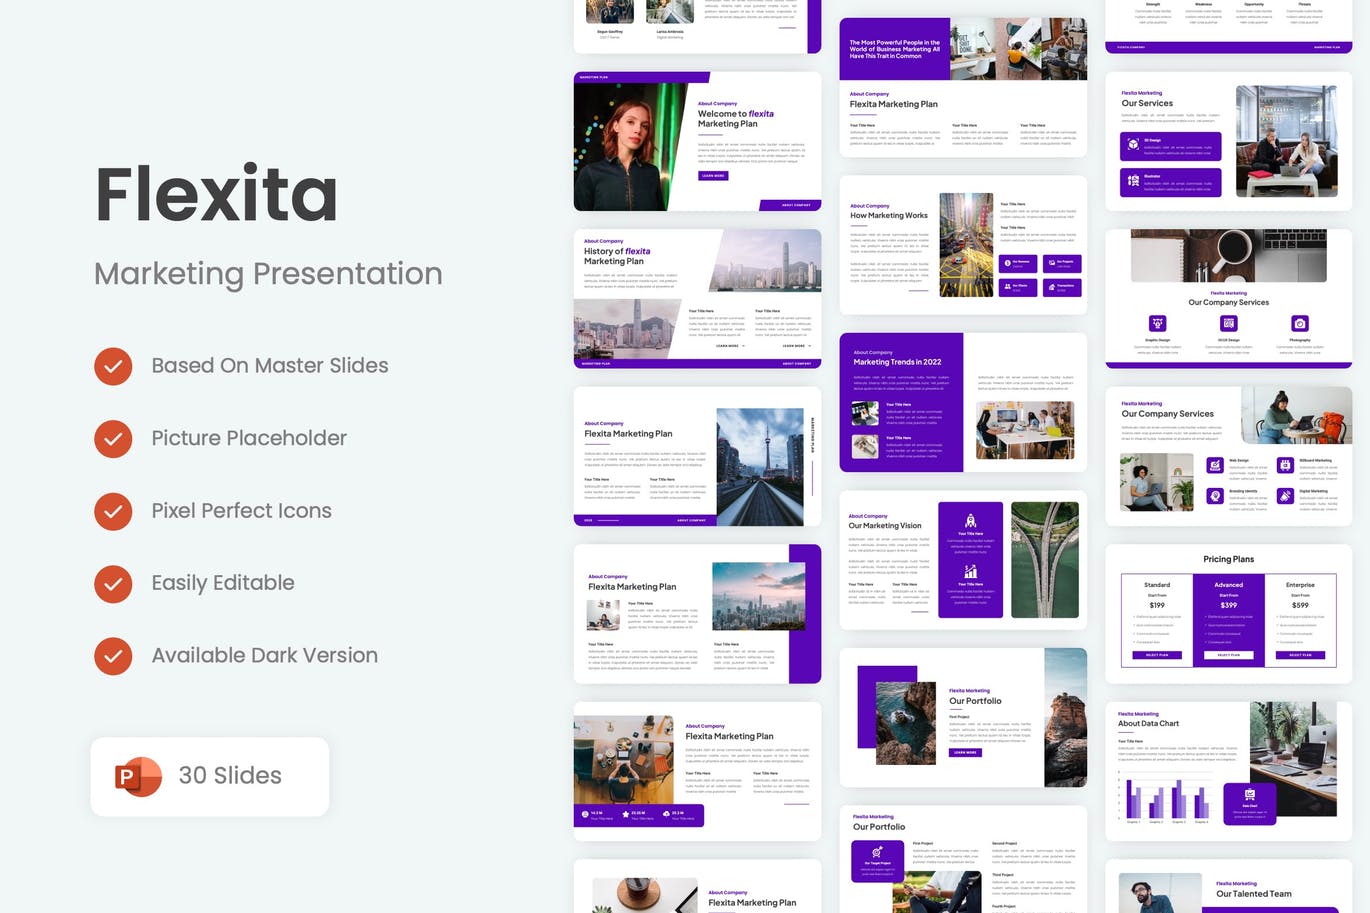 营销销售PPT幻灯片设计模板 Flexita – Marketing PowerPoint Template 幻灯图表 第1张